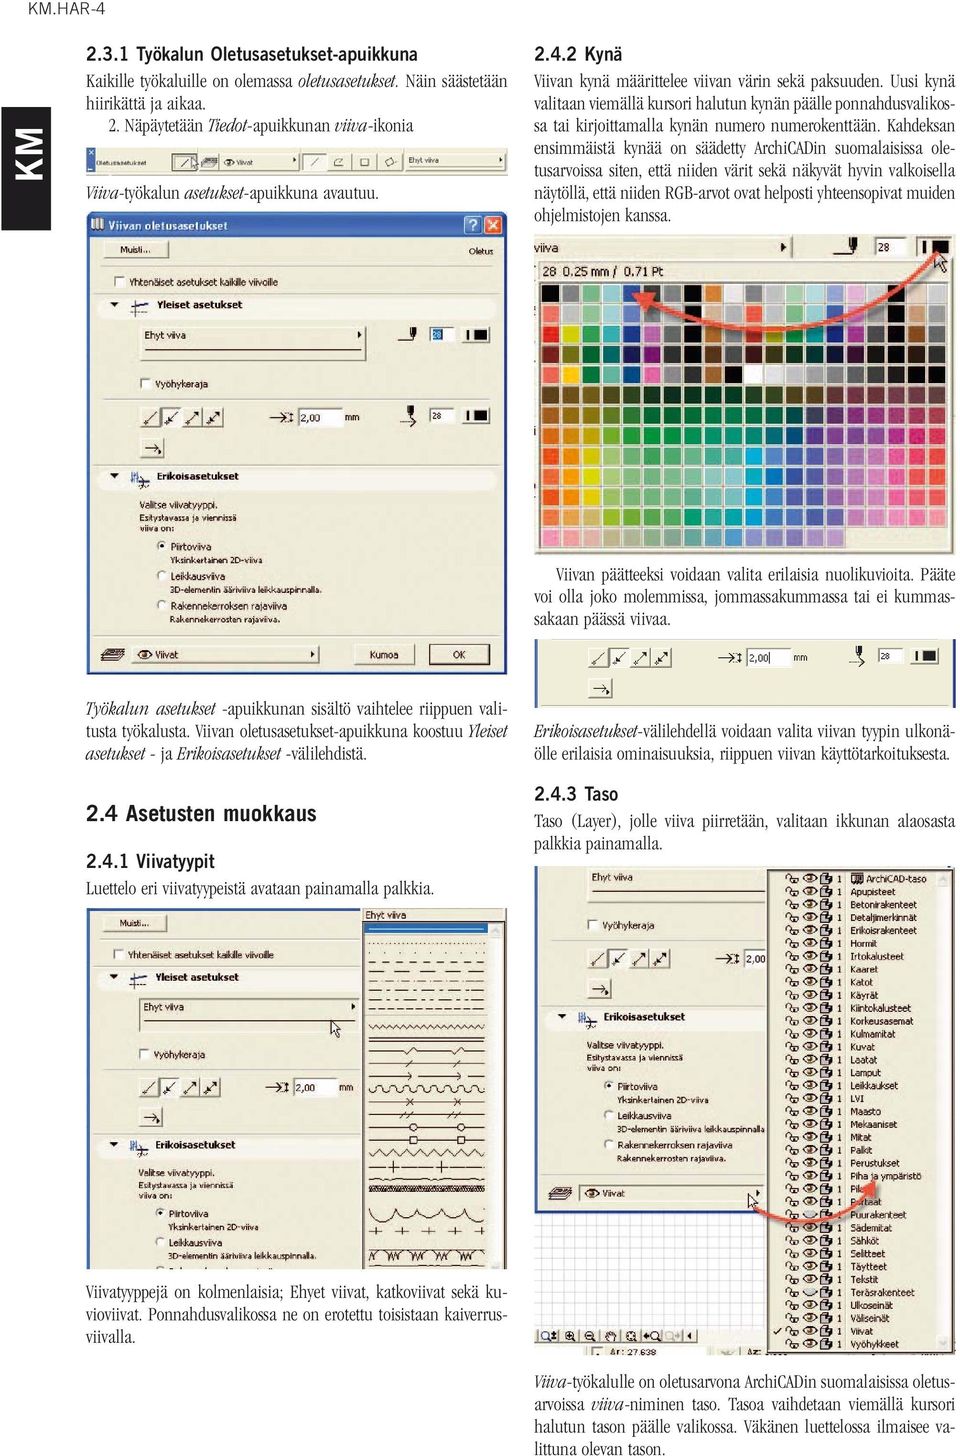 Kahdeksan ensimmäistä kynää on säädetty ArchiCADin suomalaisissa oletusarvoissa siten, että niiden värit sekä näkyvät hyvin valkoisella näytöllä, että niiden RGB-arvot ovat helposti yhteensopivat